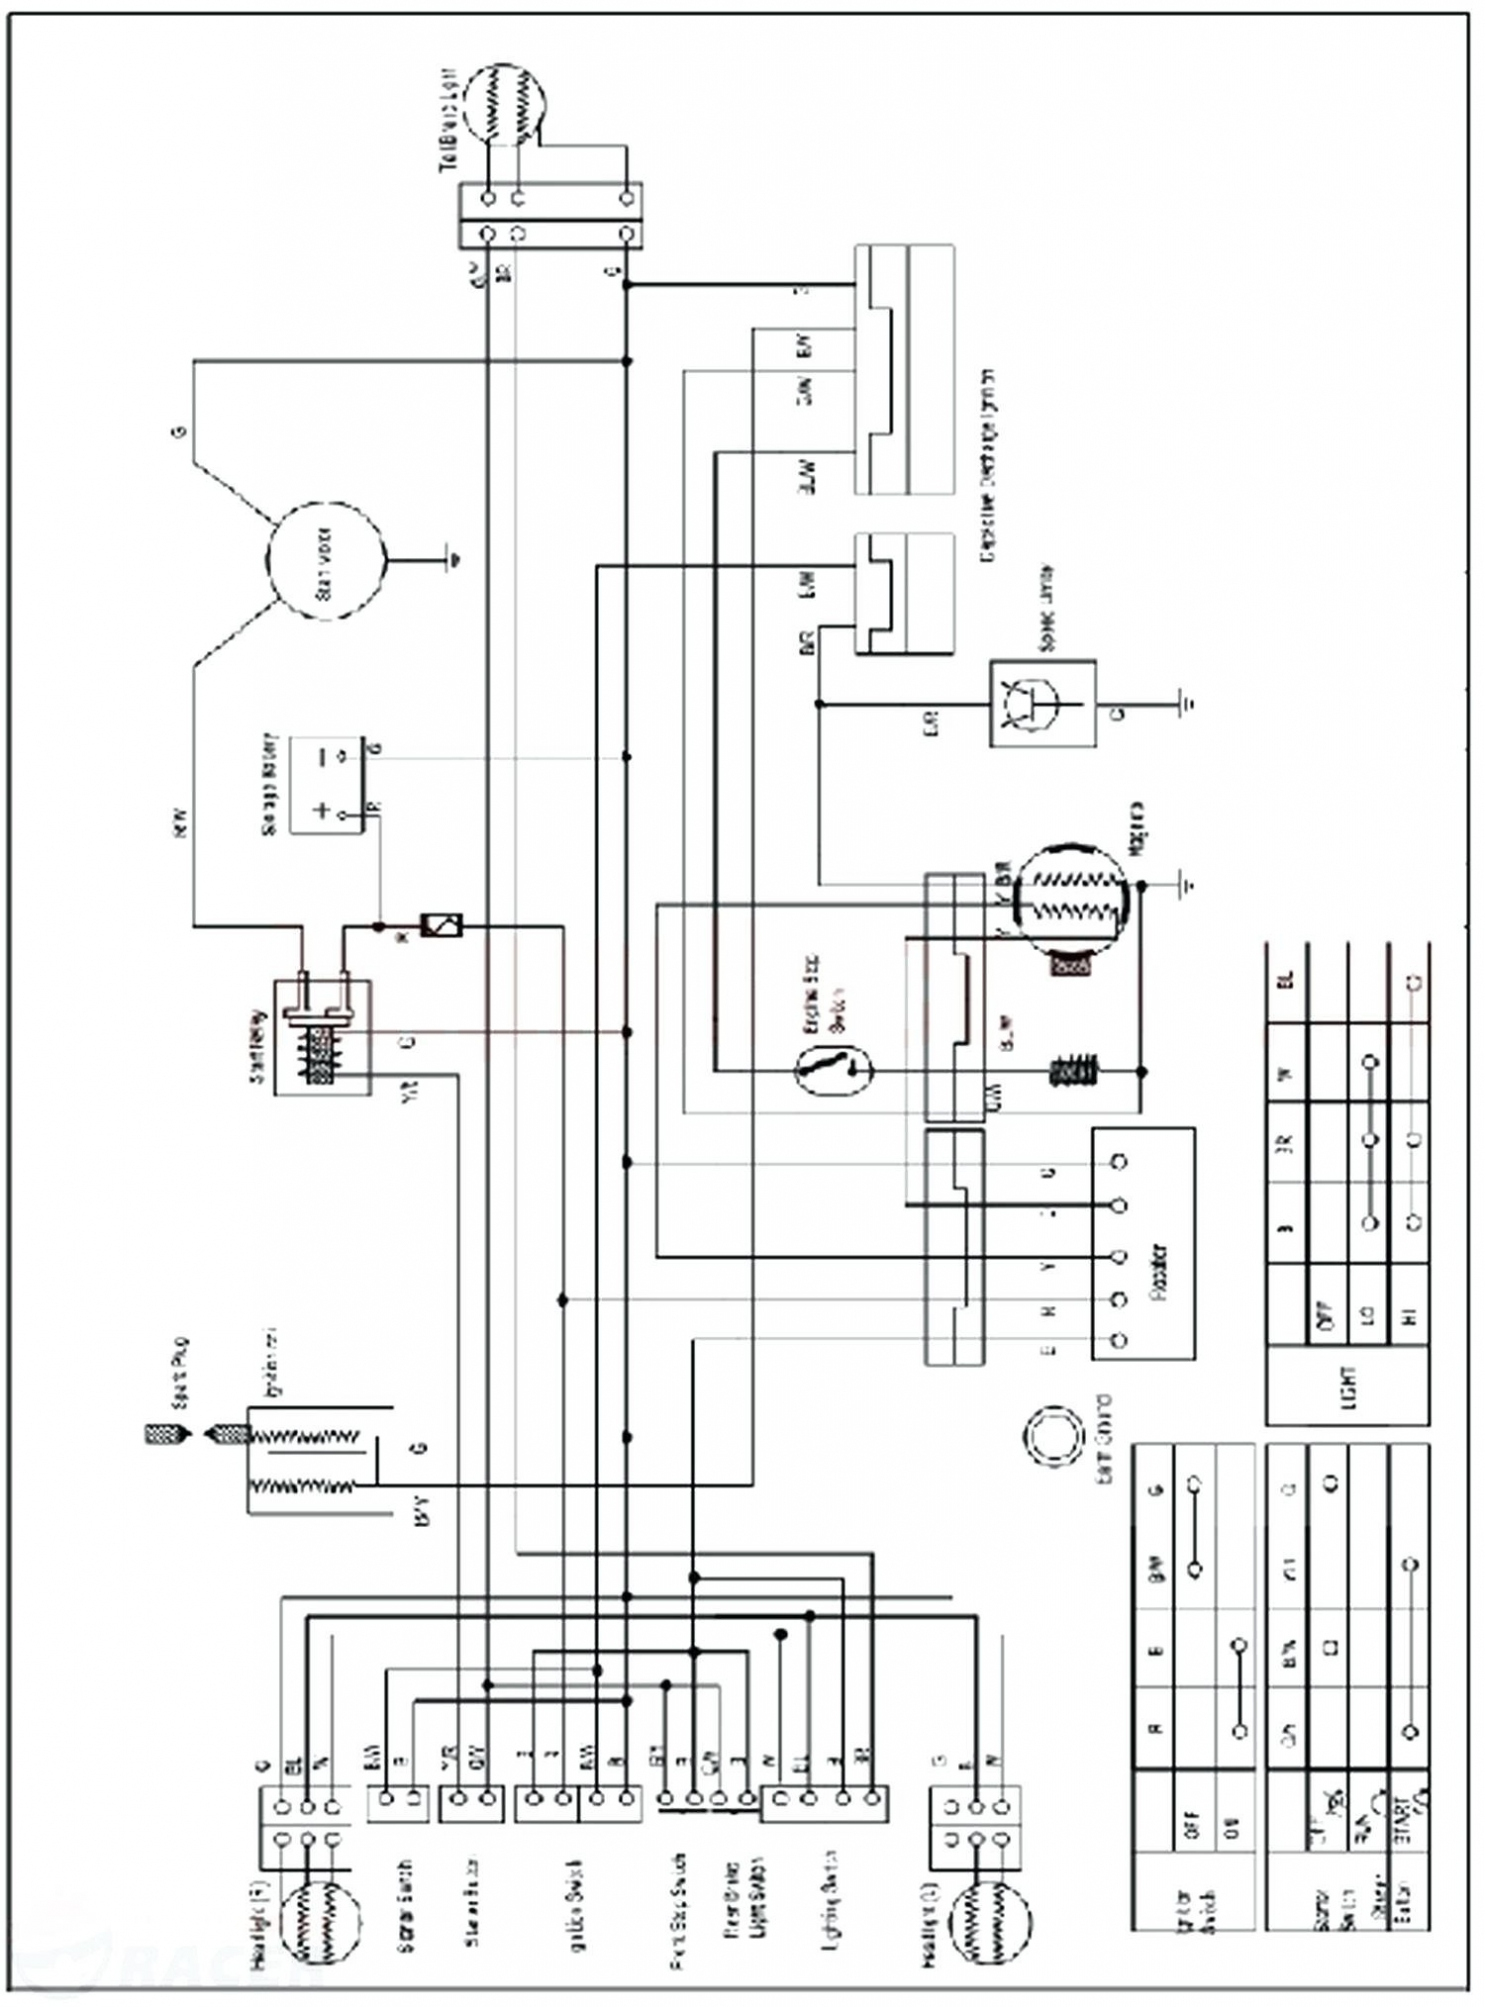 125Cc Taotao Atv Wiring Diagram | Schematic Diagram - Tao Tao 110 Atv Wiring Diagram